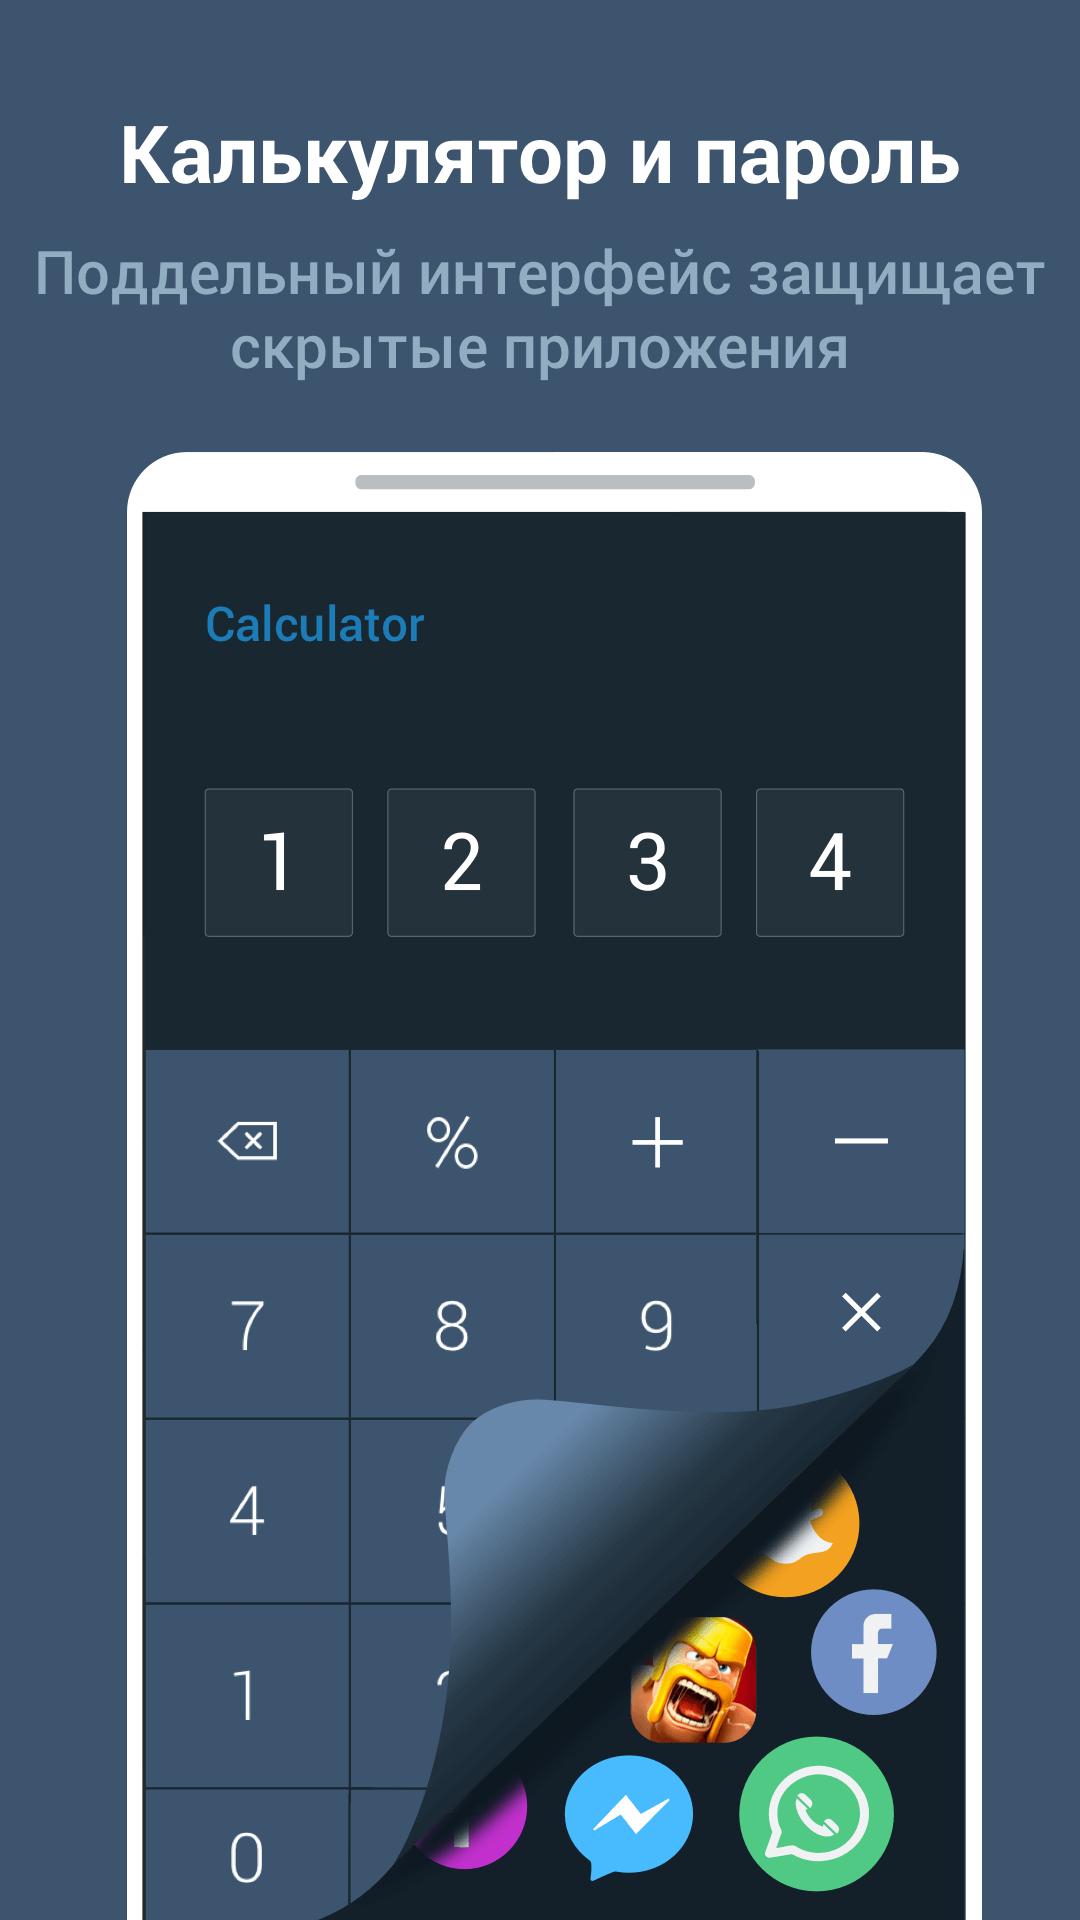 Приложение калькулятор для скрытия фото